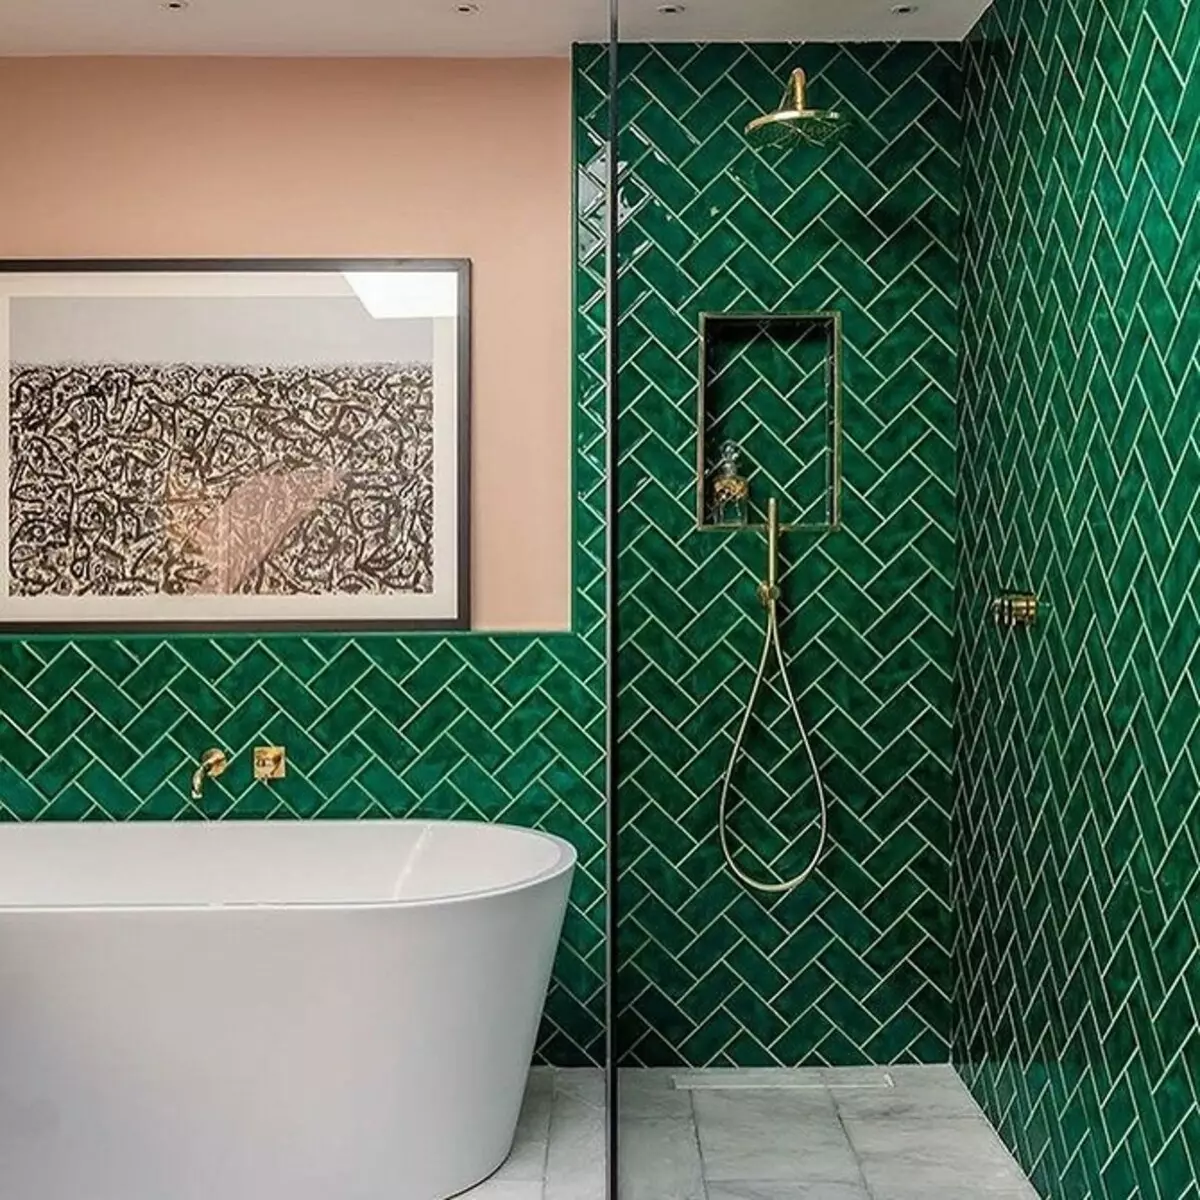 Design de salle de bain avec douche et baignoire: Idées intérieures sur 75 photos - IVD.RU 4108_58